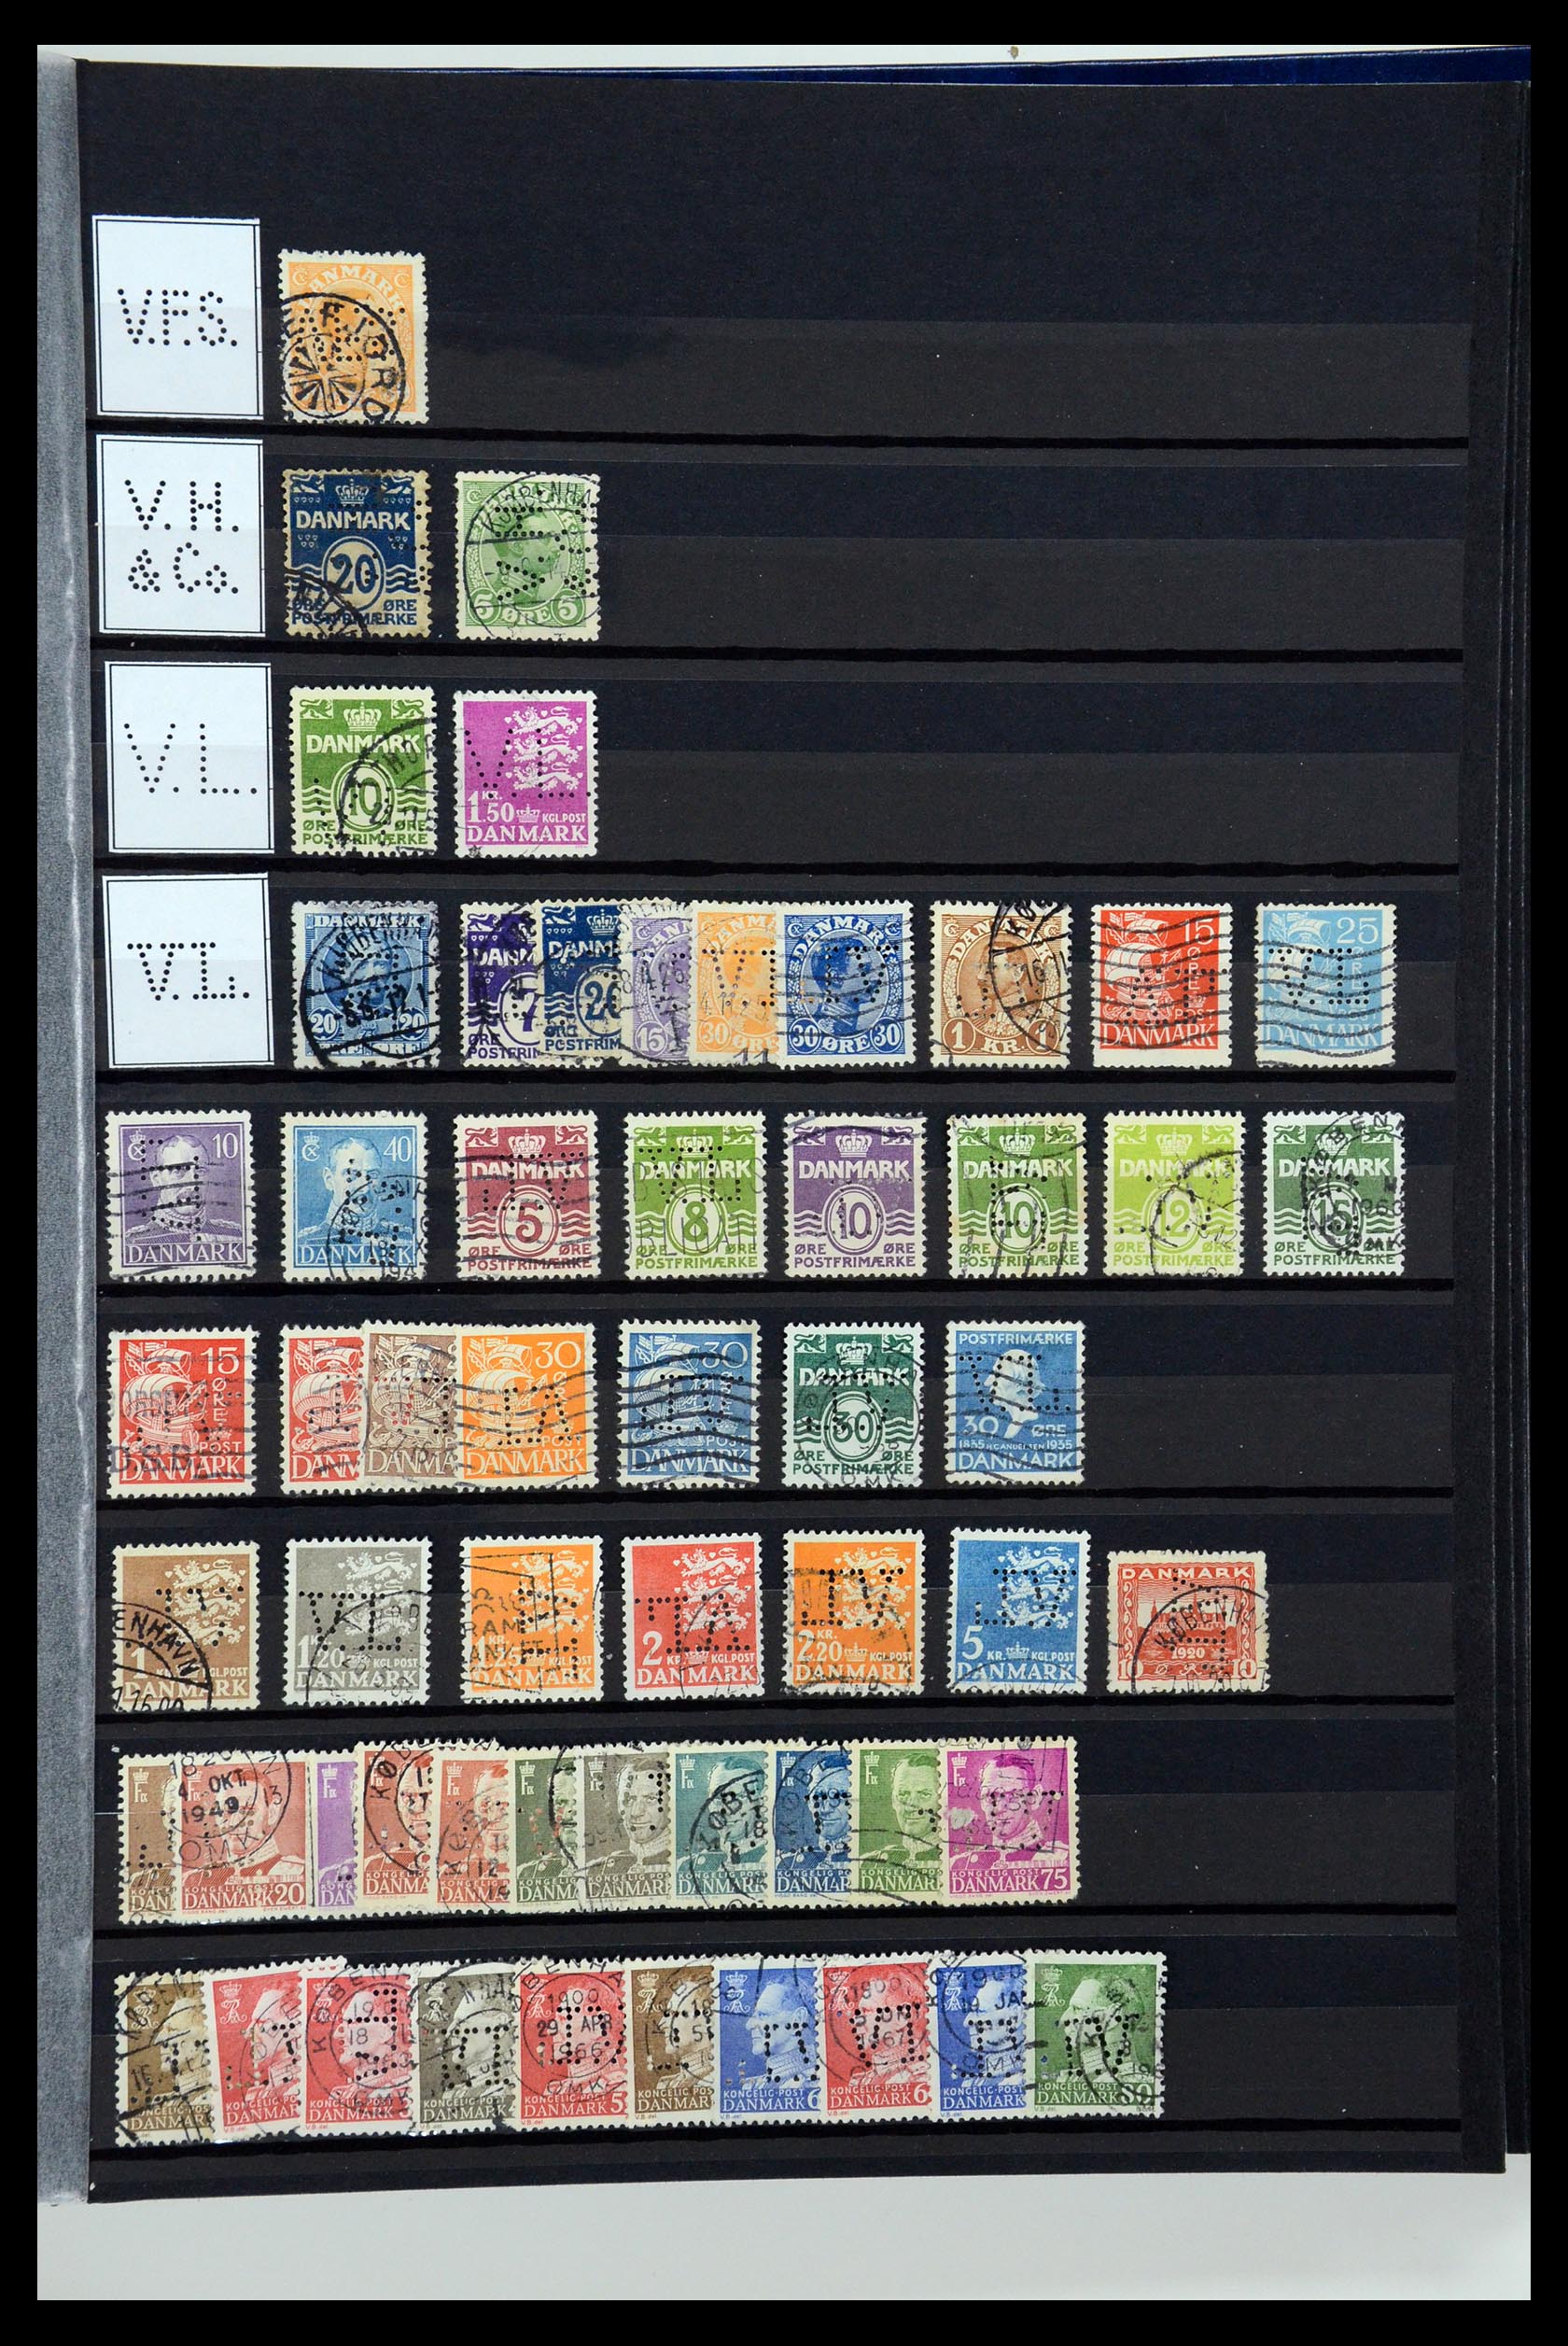 36396 220 - Postzegelverzameling 36396 Denemarken perfins.